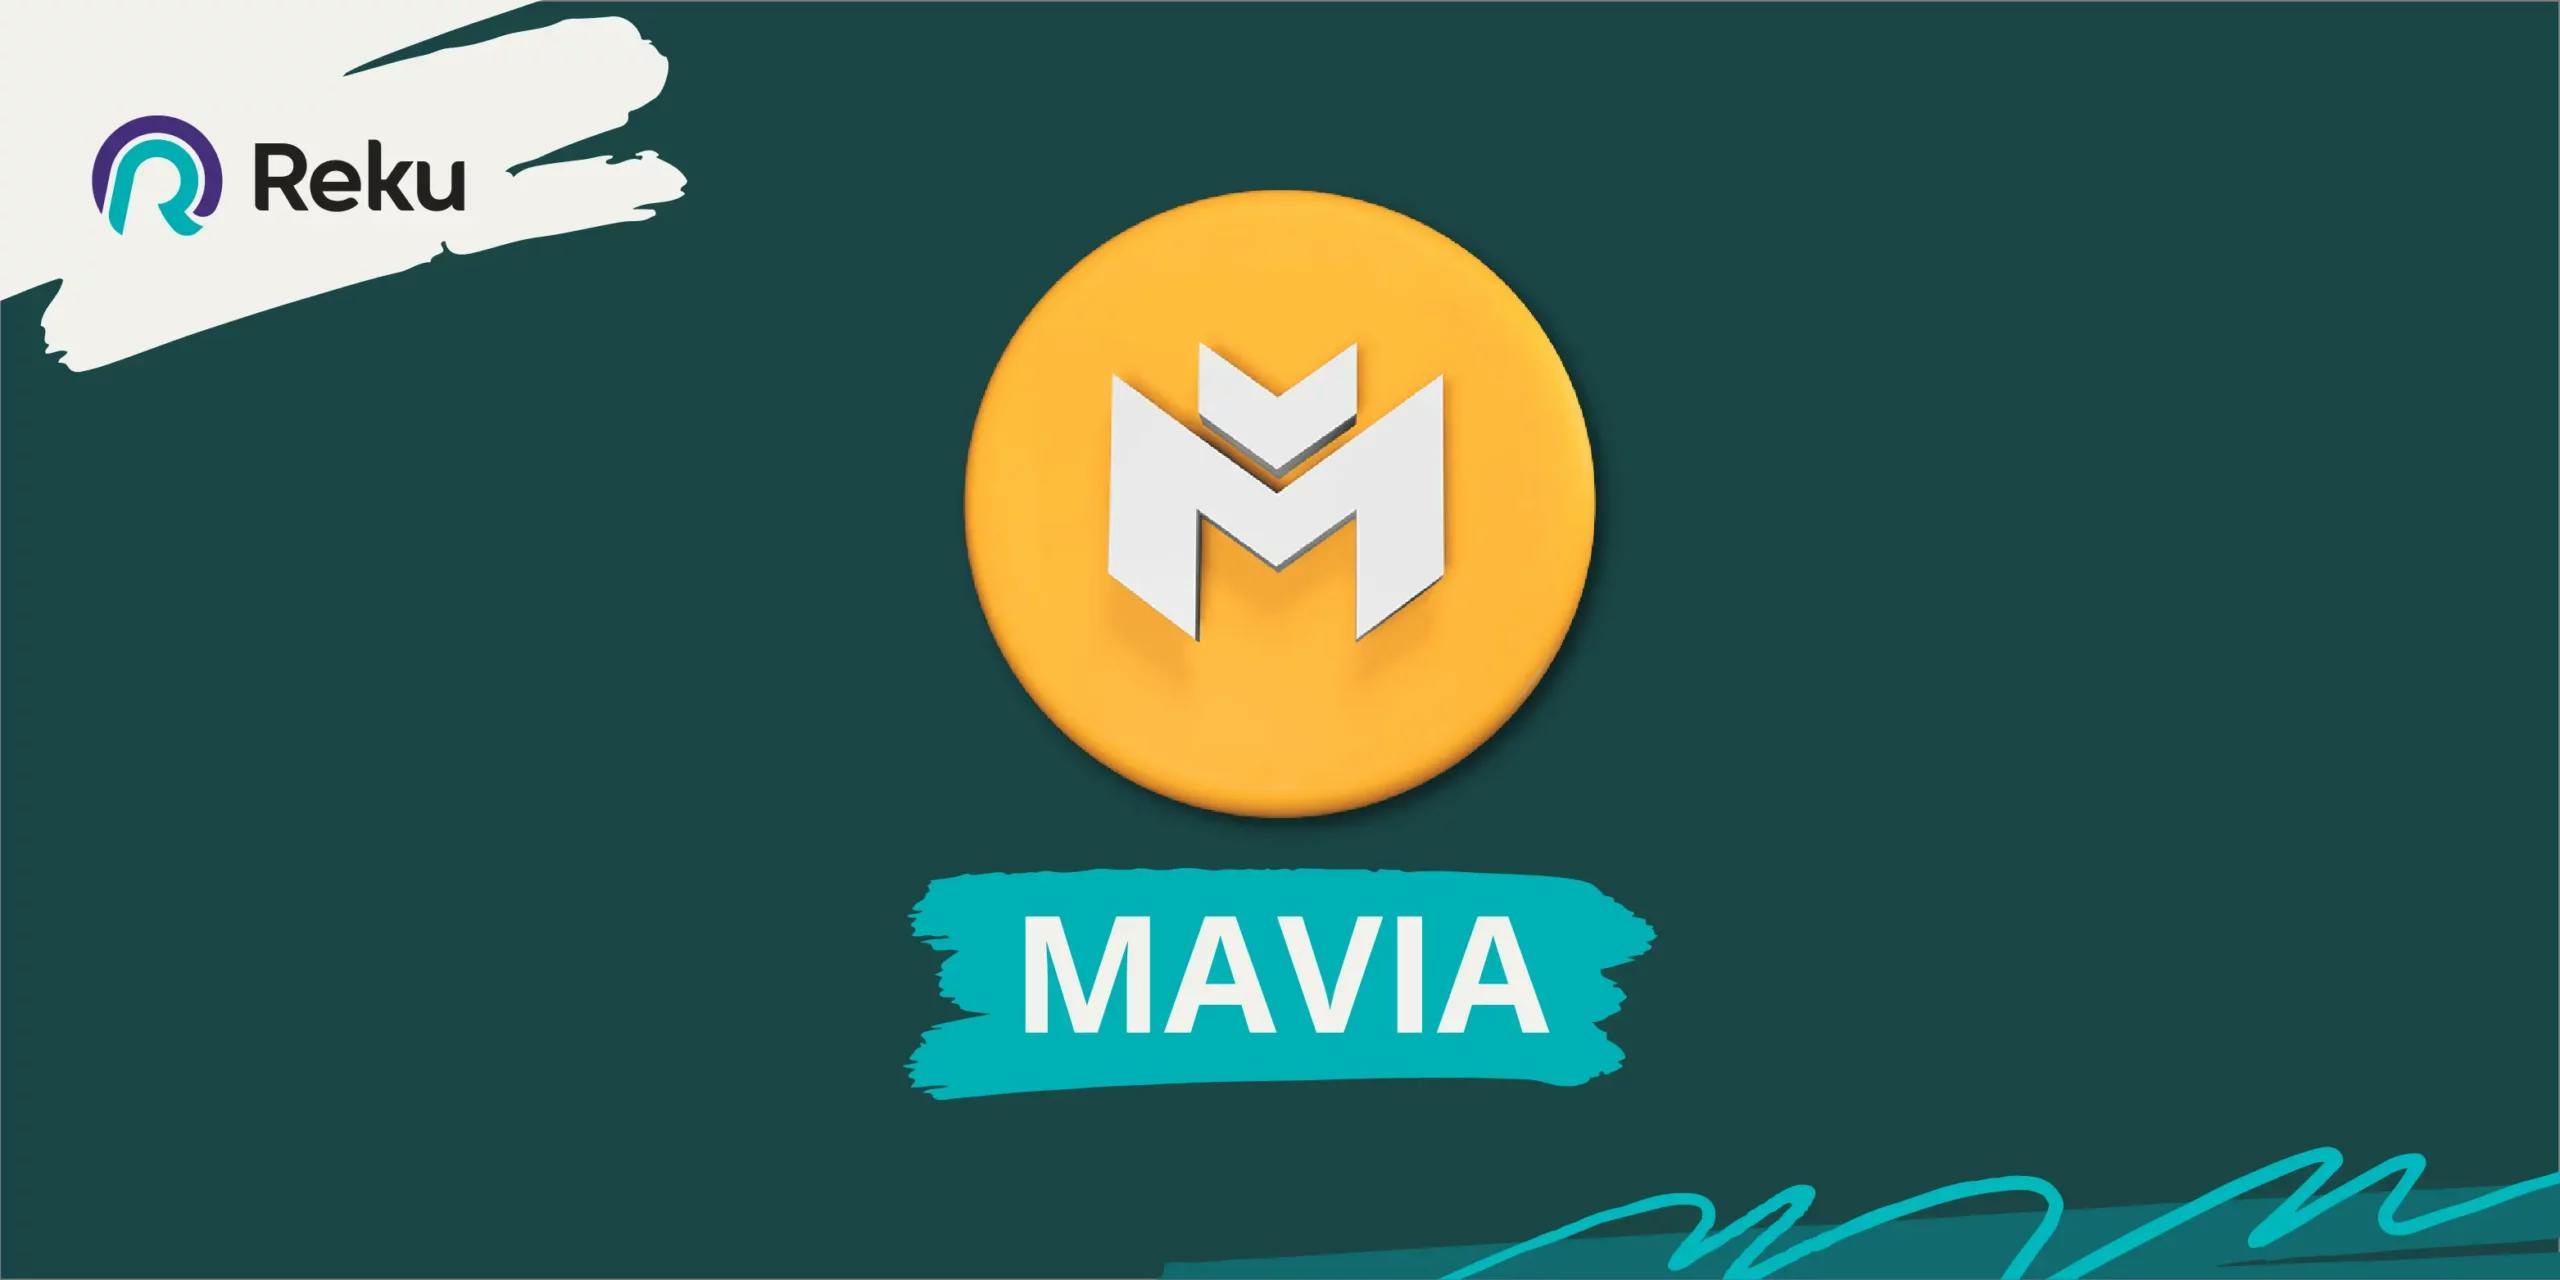 Apa itu Heroes of Mavia?